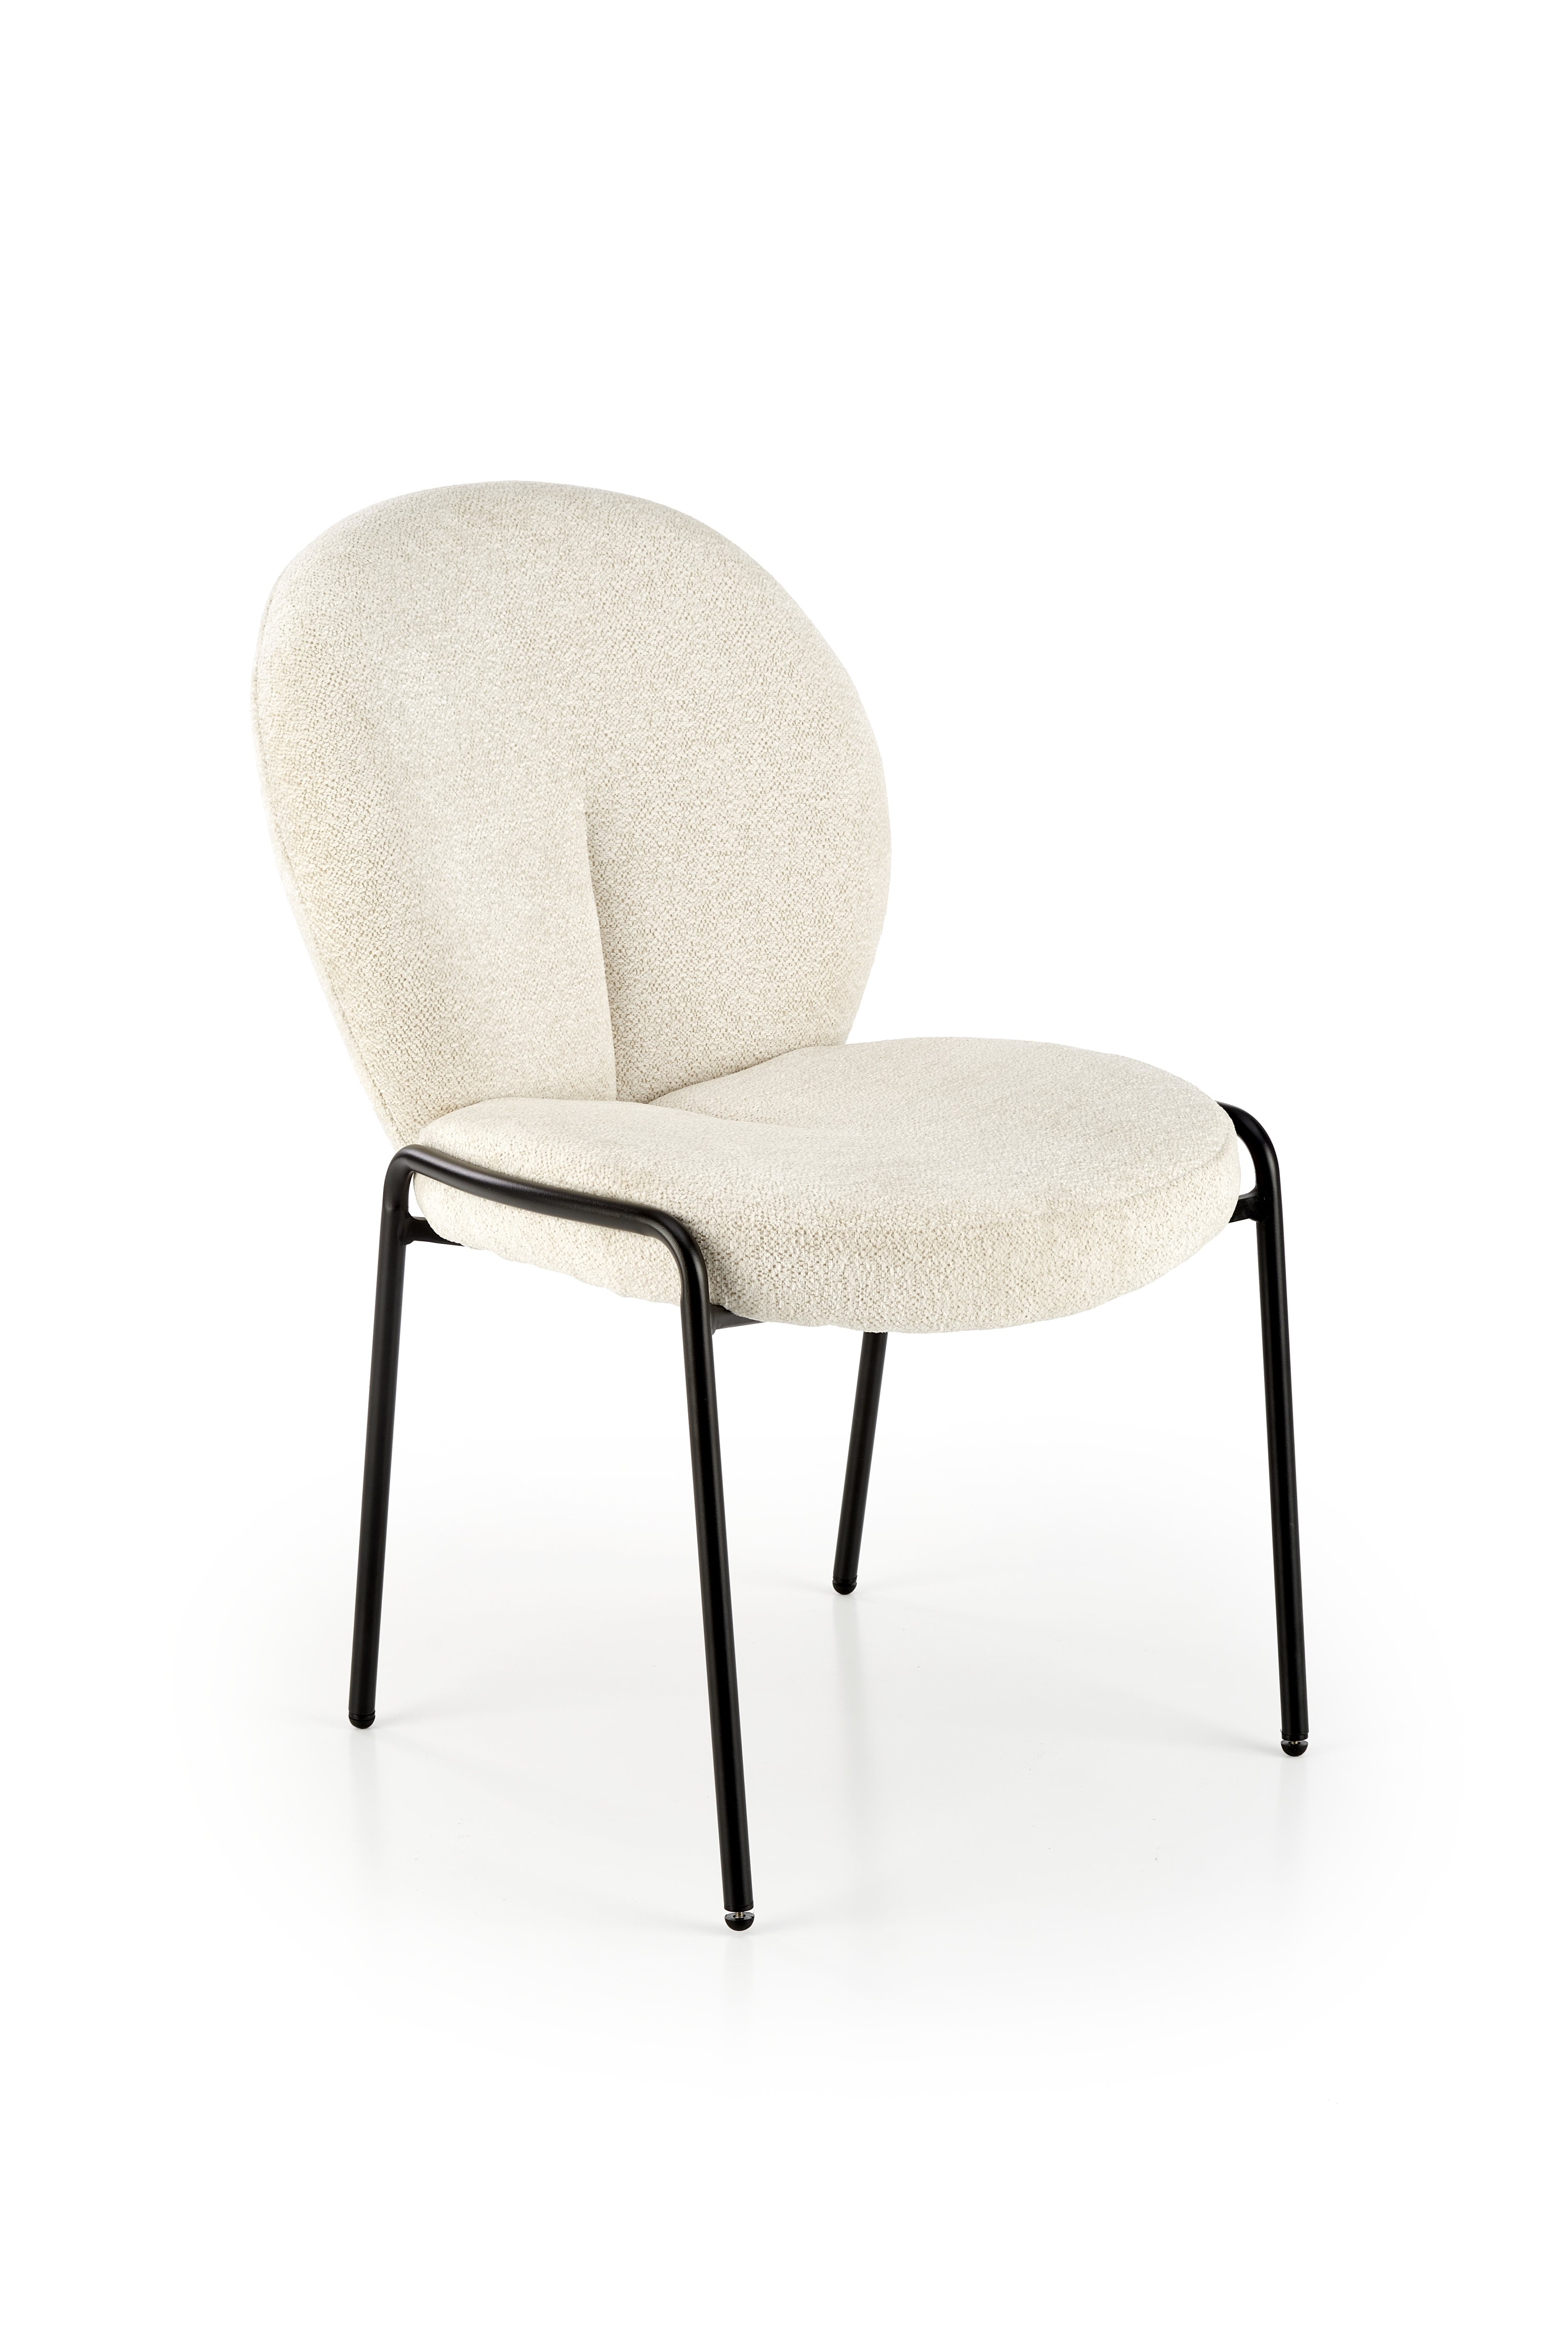 Krzesło tapicerowane K507 - kremowy k507 krzesło kremowy